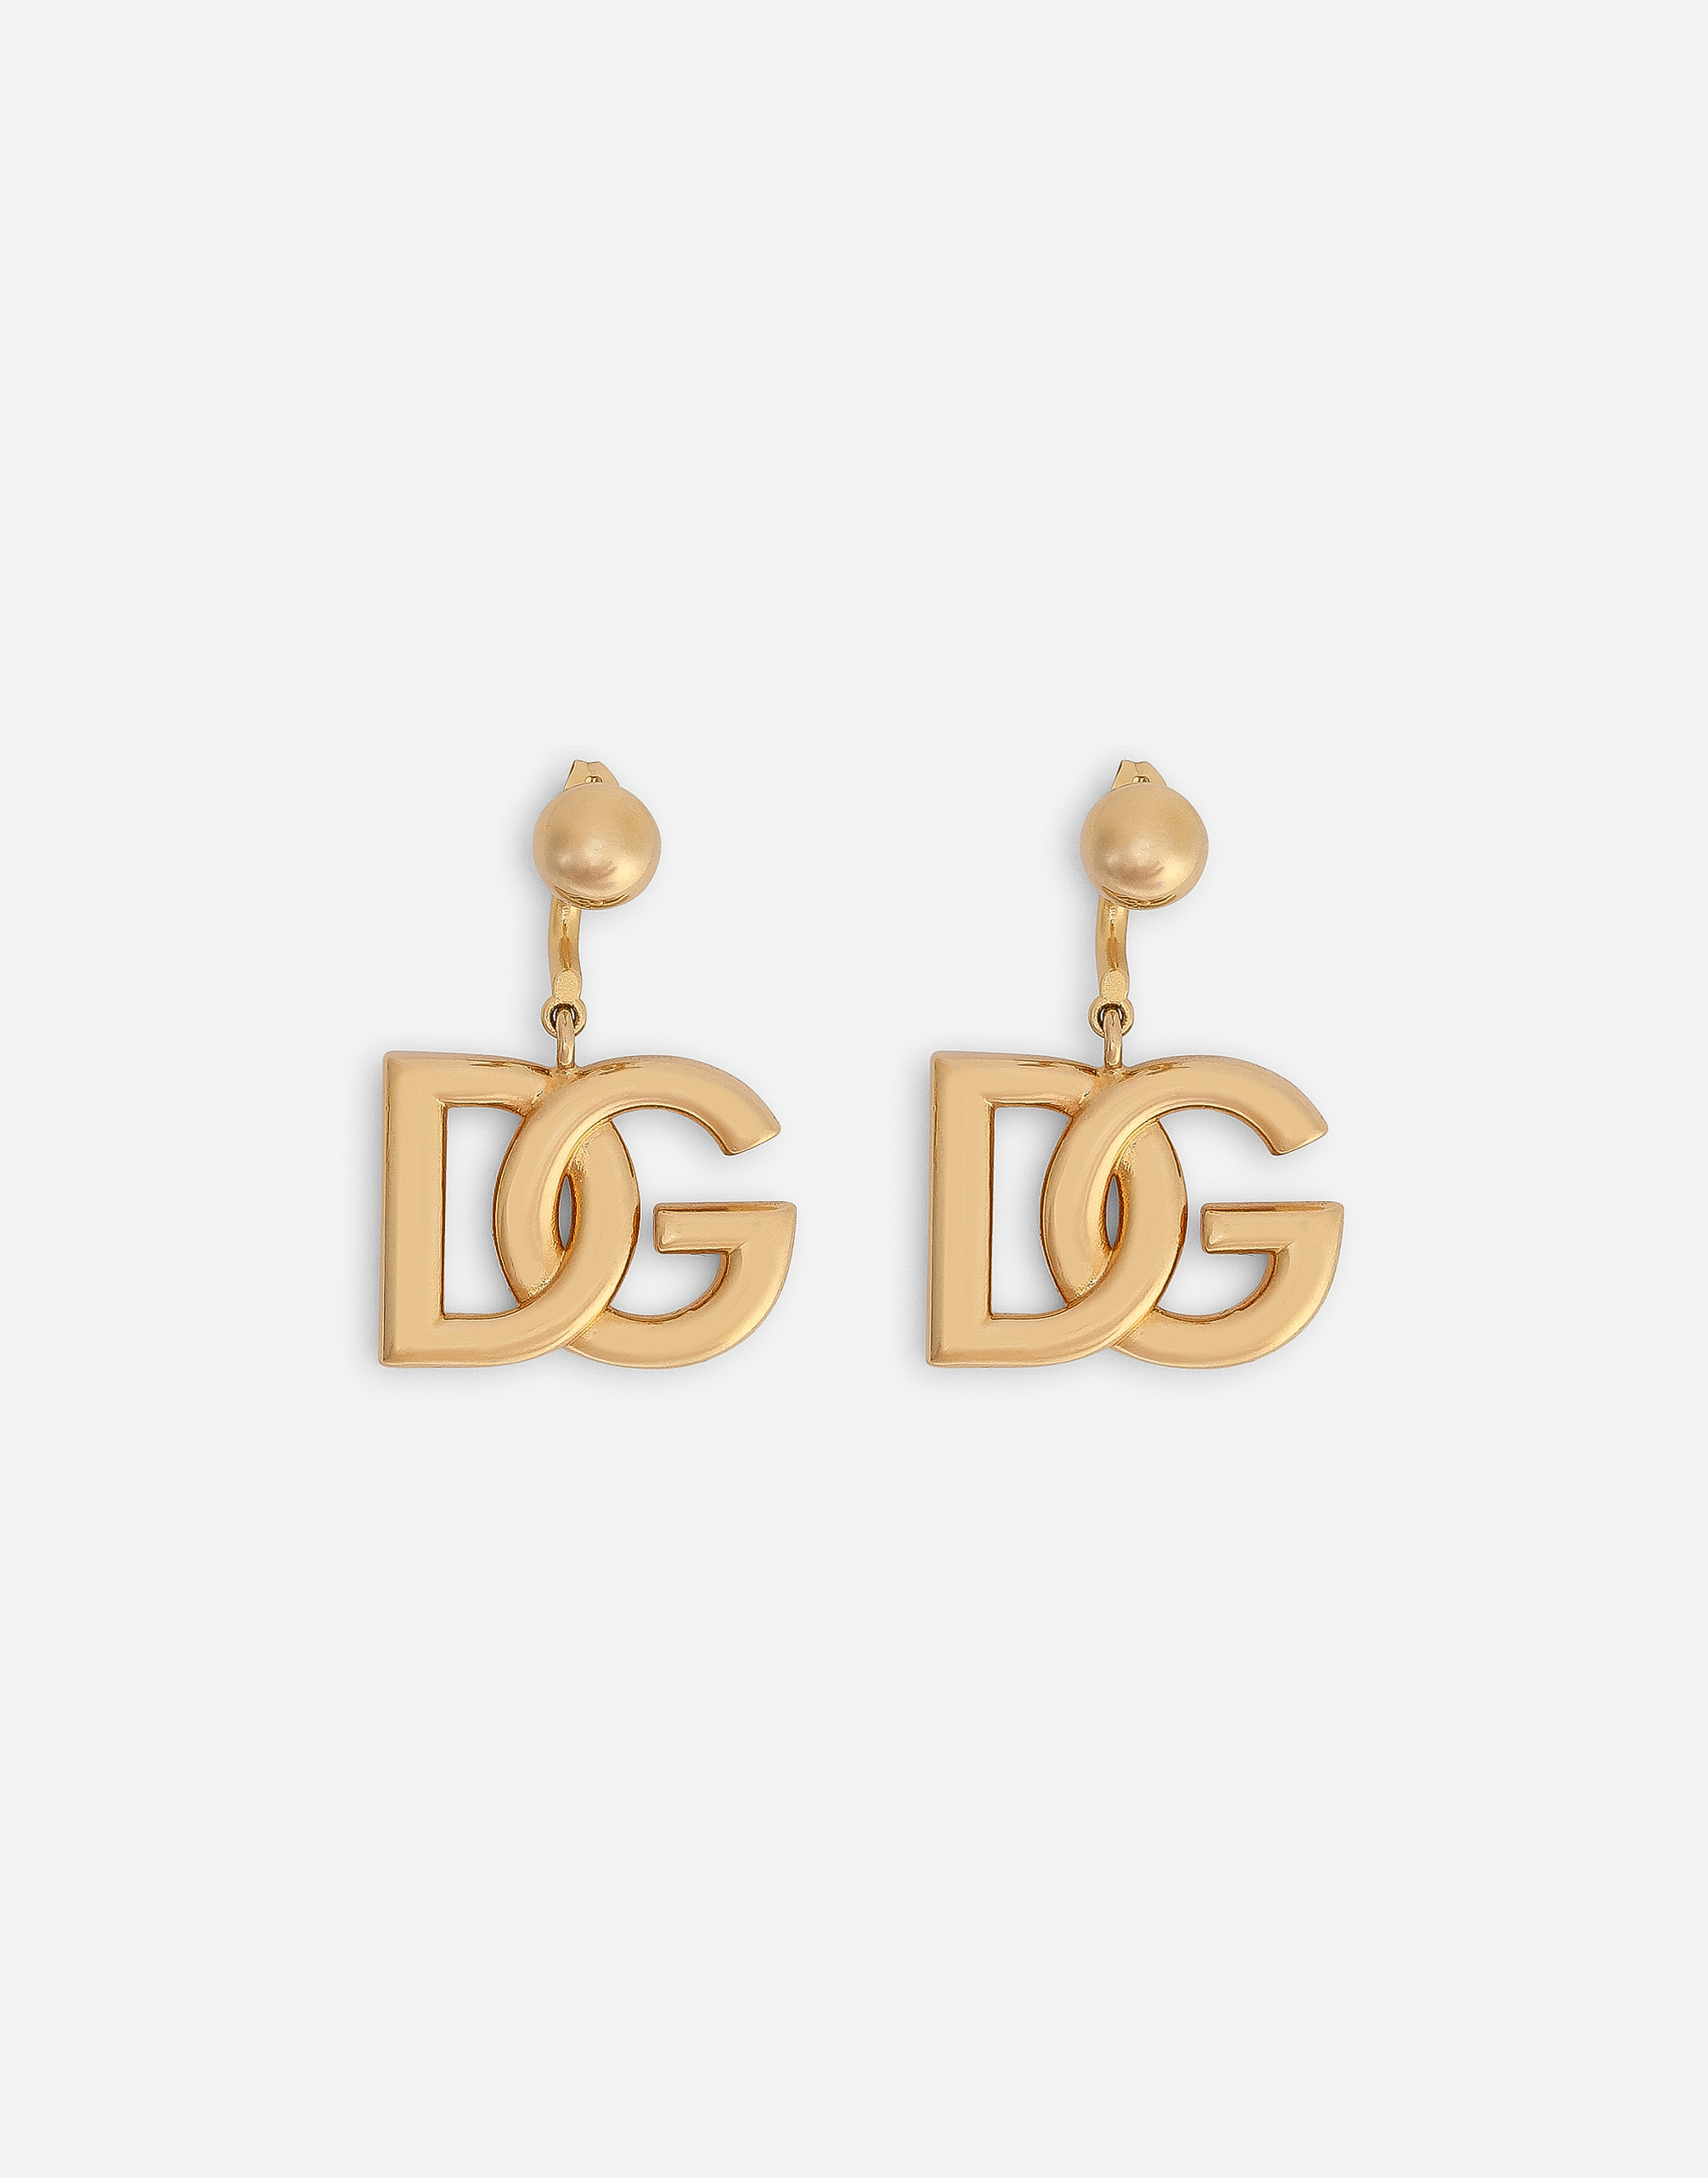 DG logo earrings in Gold